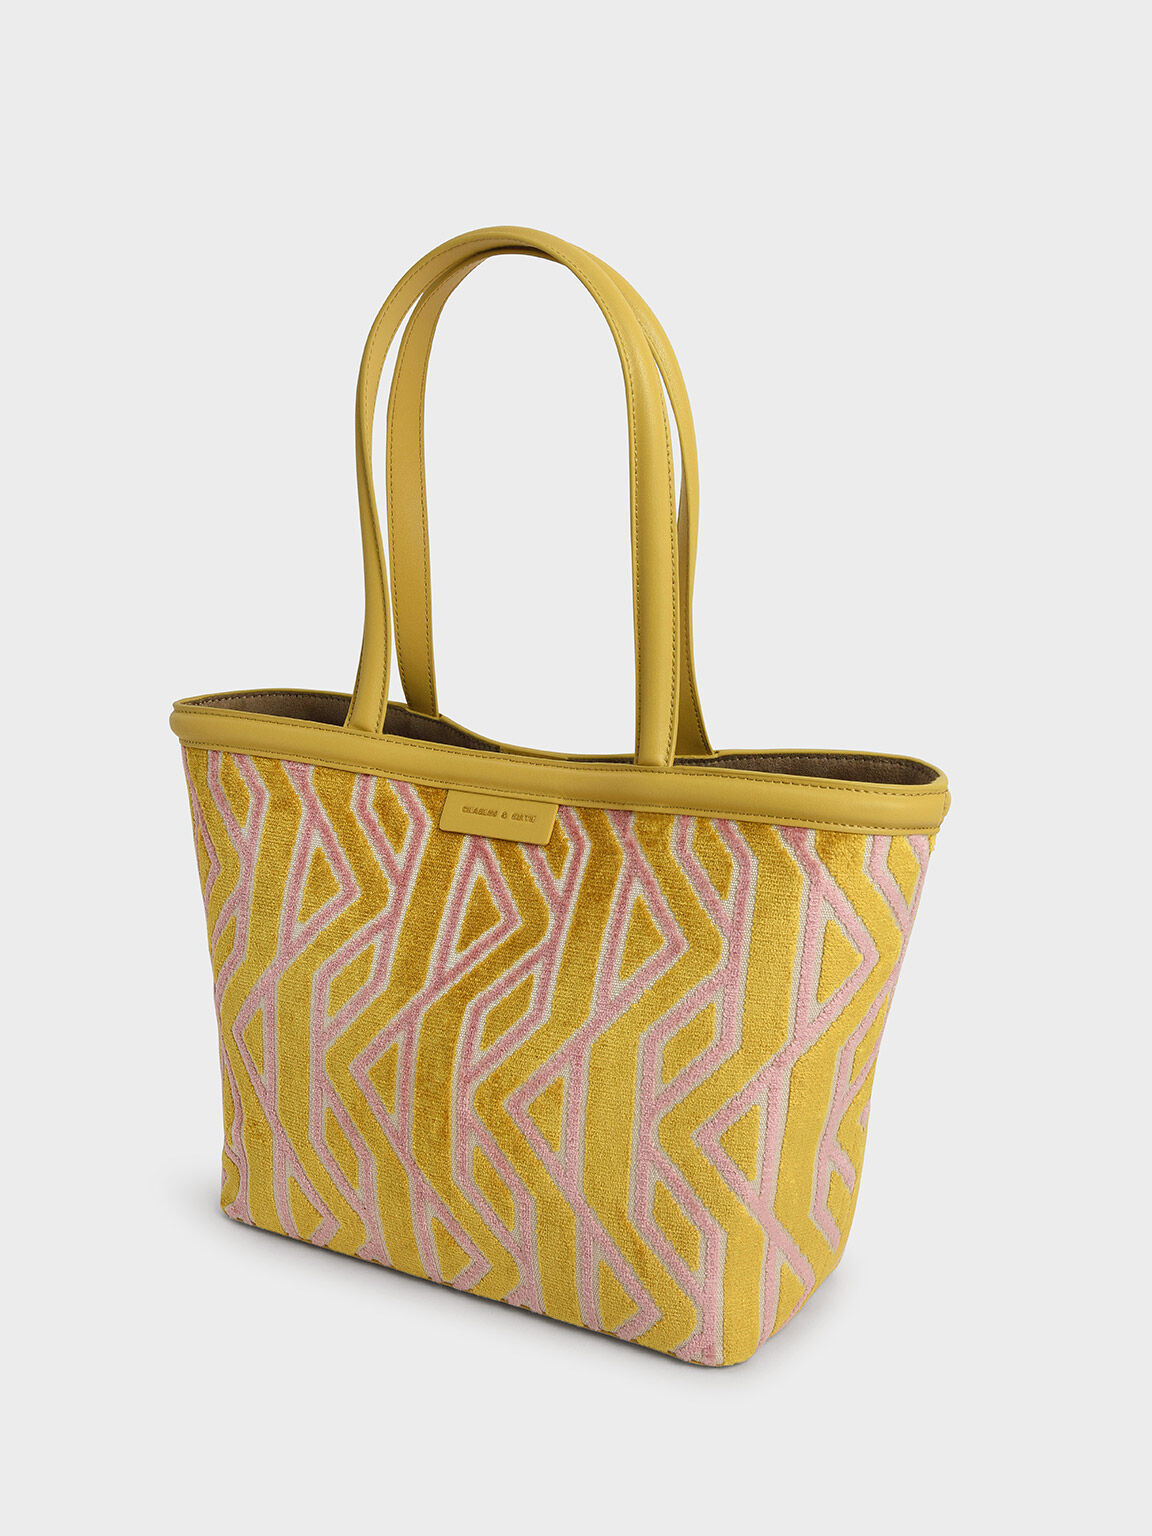 Charlot Jacquard Printed Tote Bag, Mustard, hi-res